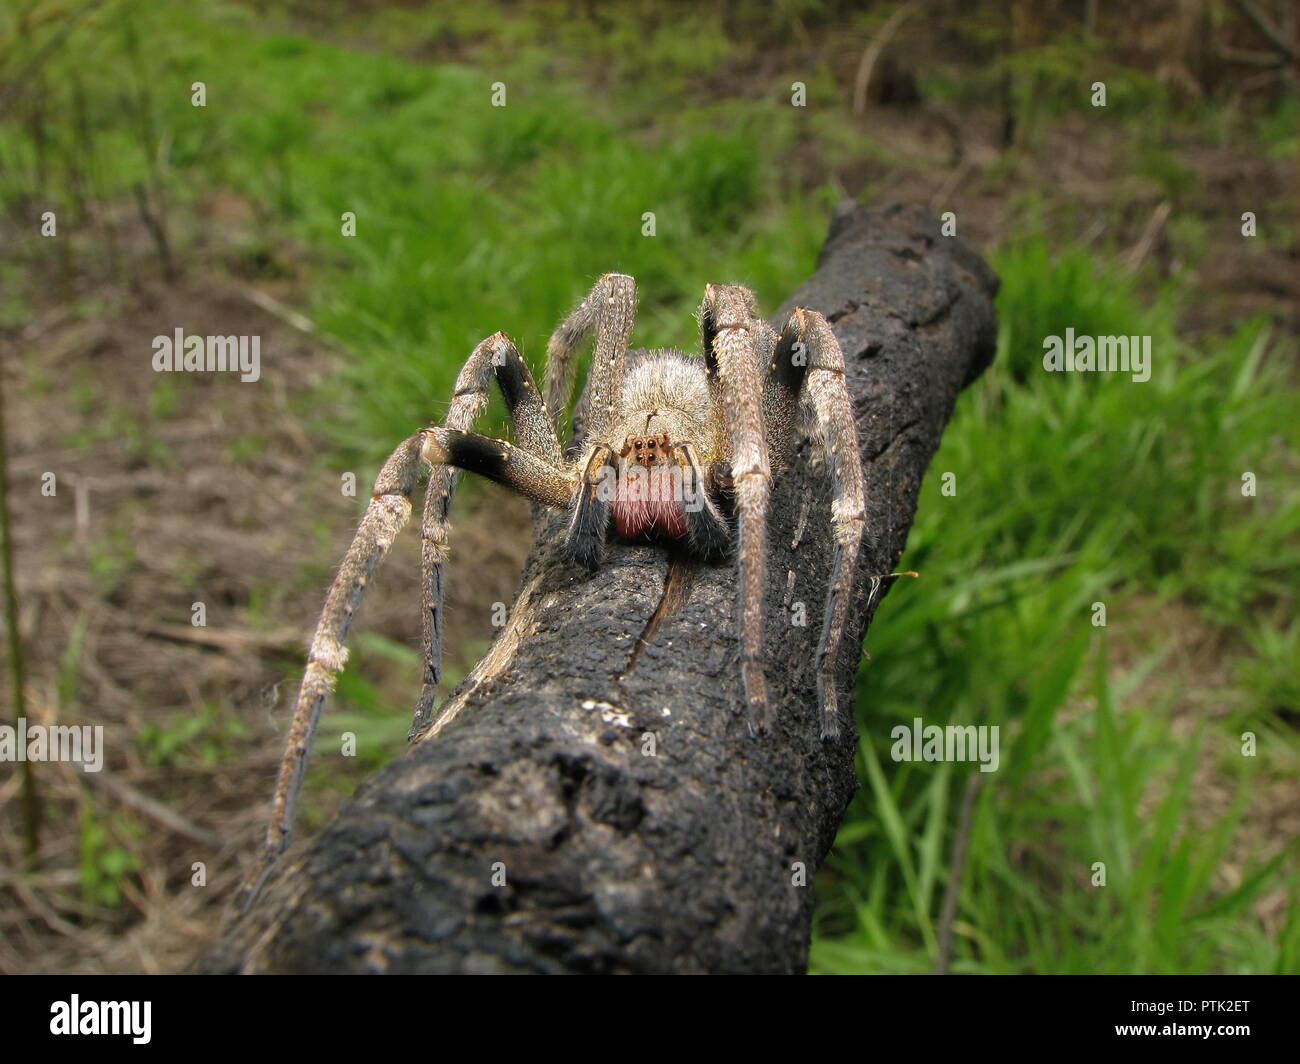 L'errance du Brésil (araignée Phoneutria) sur un champ ouvert, araignées venimeux d'Amérique du sud, également connu comme Armadeira, avec quelques morsures mortelles d'accidents. Banque D'Images